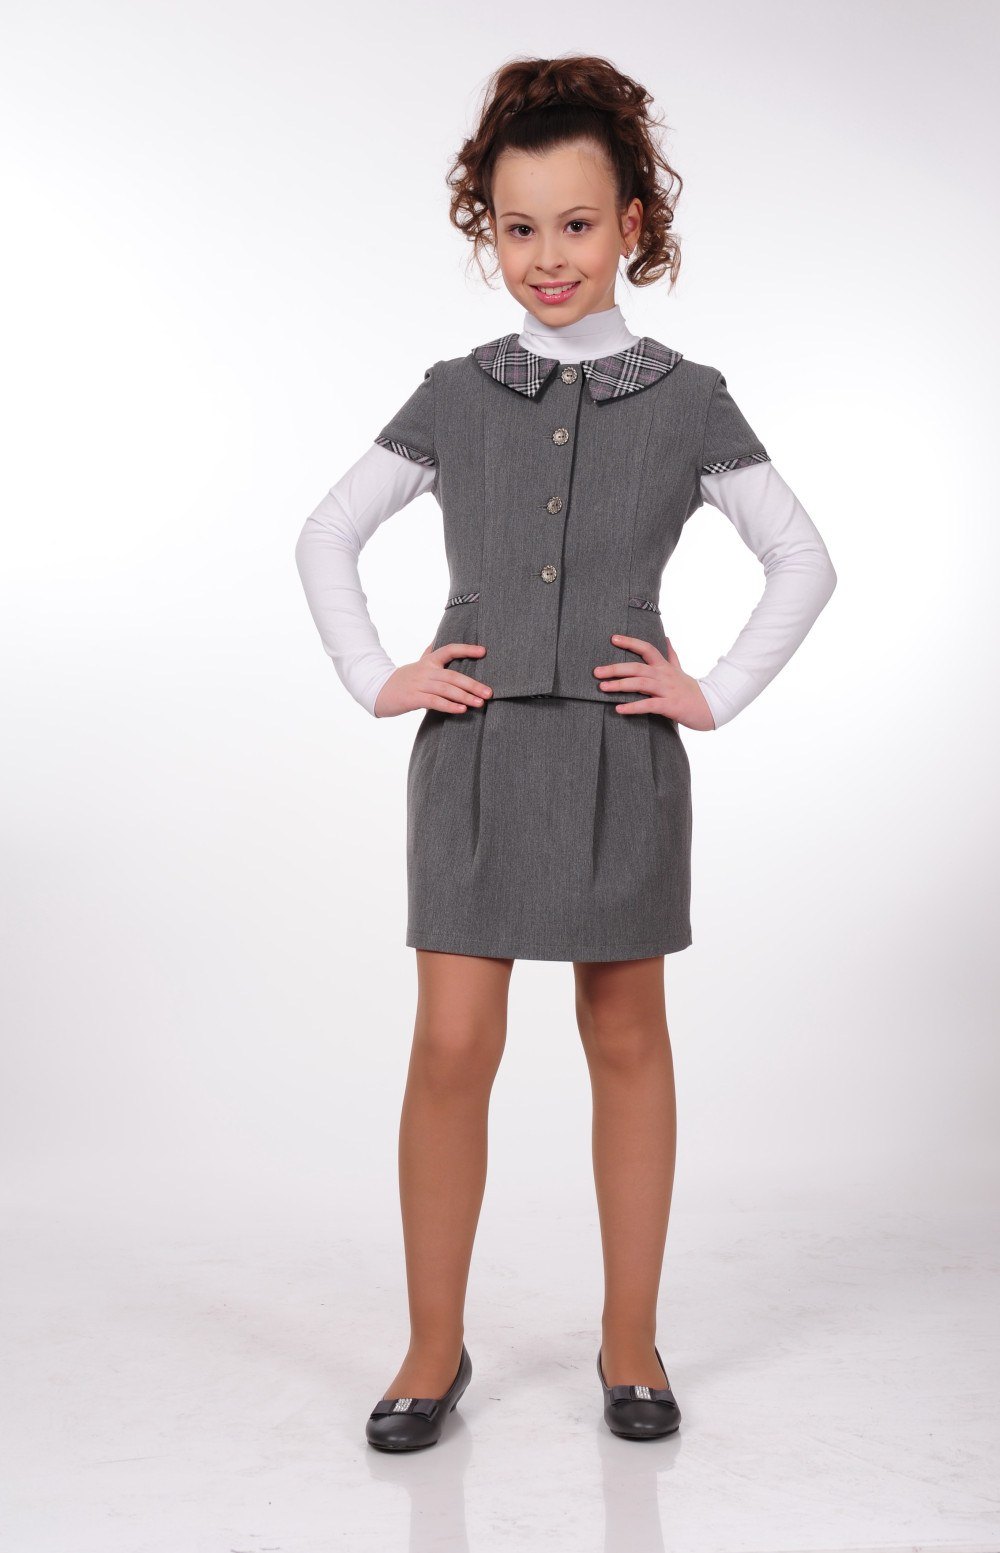 Купить одежду для школы. Chessford платье школьное. Форма для девочек. Школьная форма серого цвета для девочек.